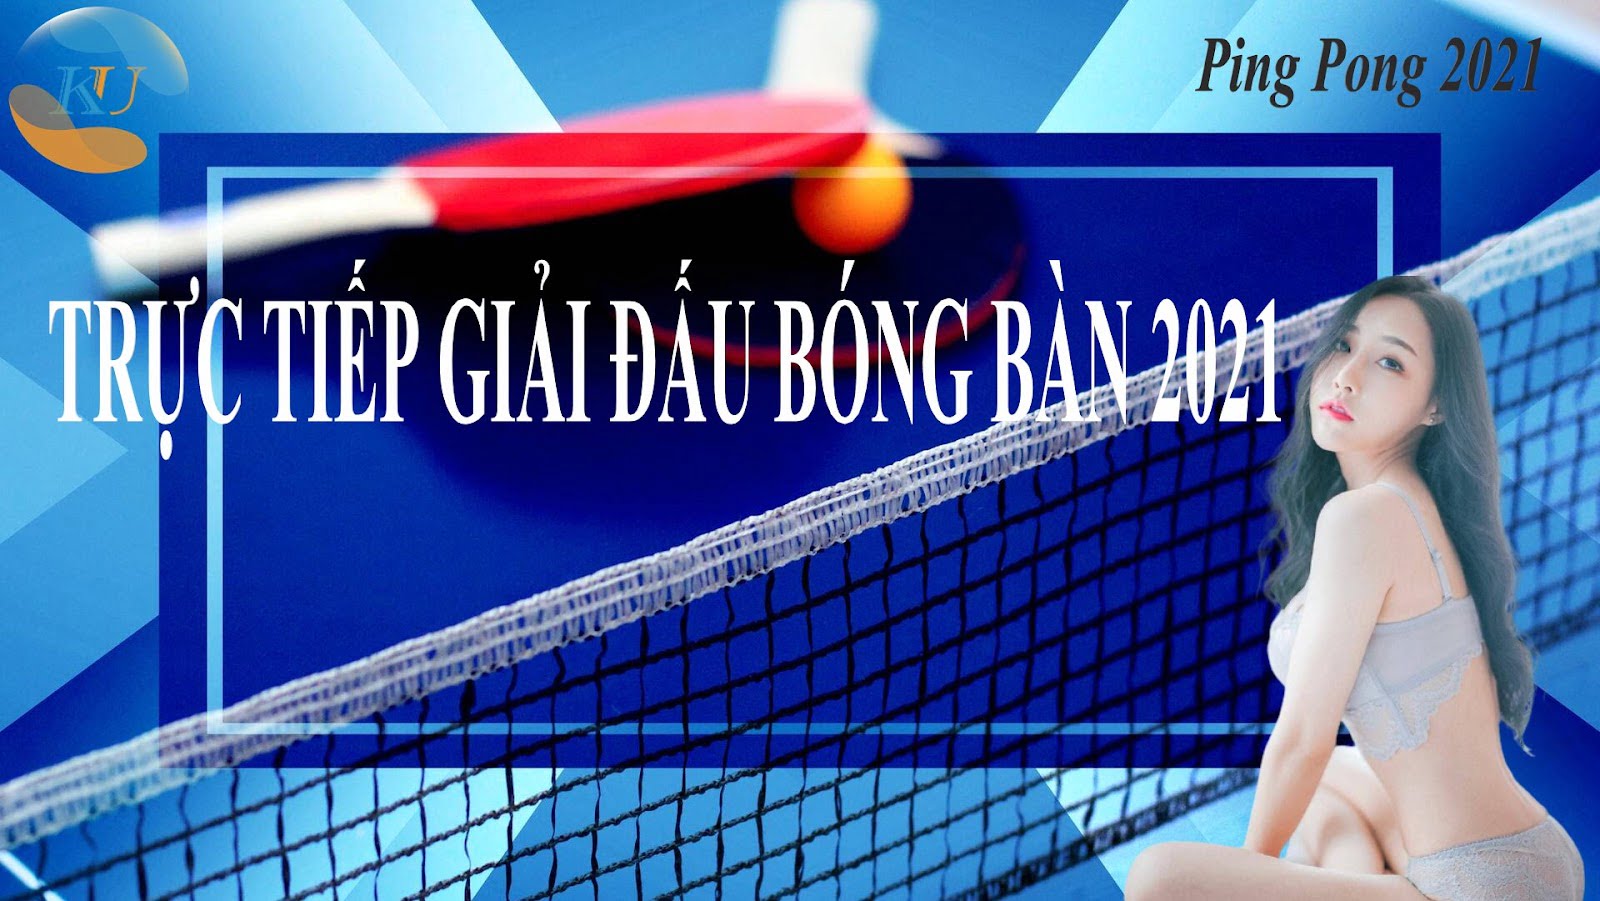 [Trực tiếp giải đấu Ping Pong 2021] Xem Giải đấu Bóng bàn 2021 tại…